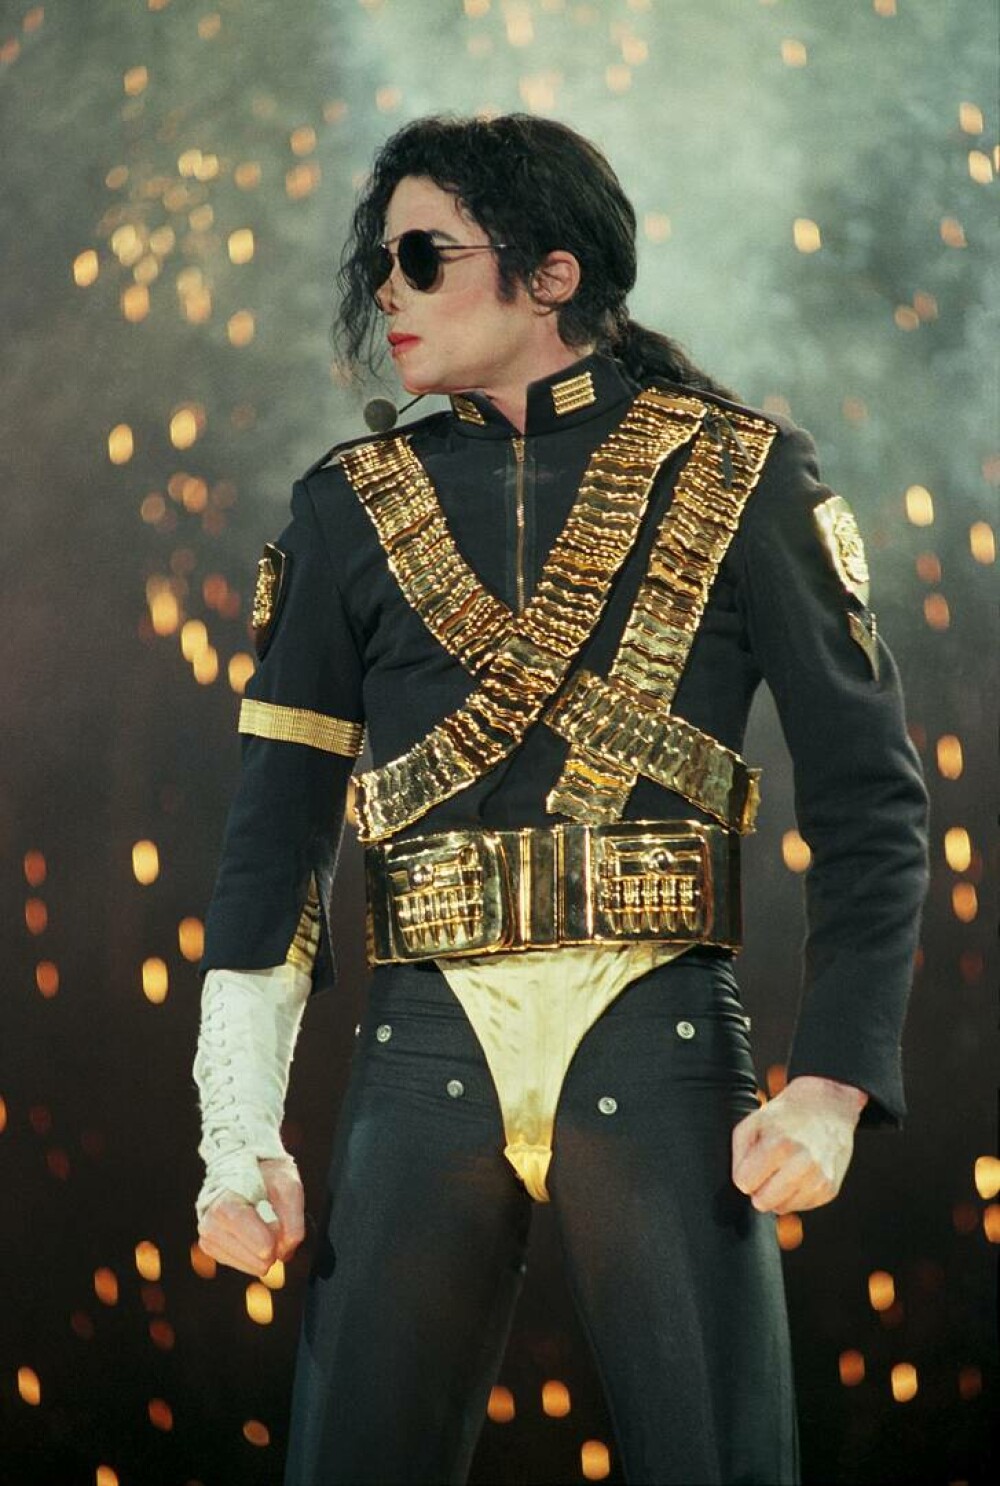 Imagini de colecție cu Michael Jackson. Regele muzicii pop ar fi împlinit 65 de ani | GALERIE FOTO - Imaginea 34